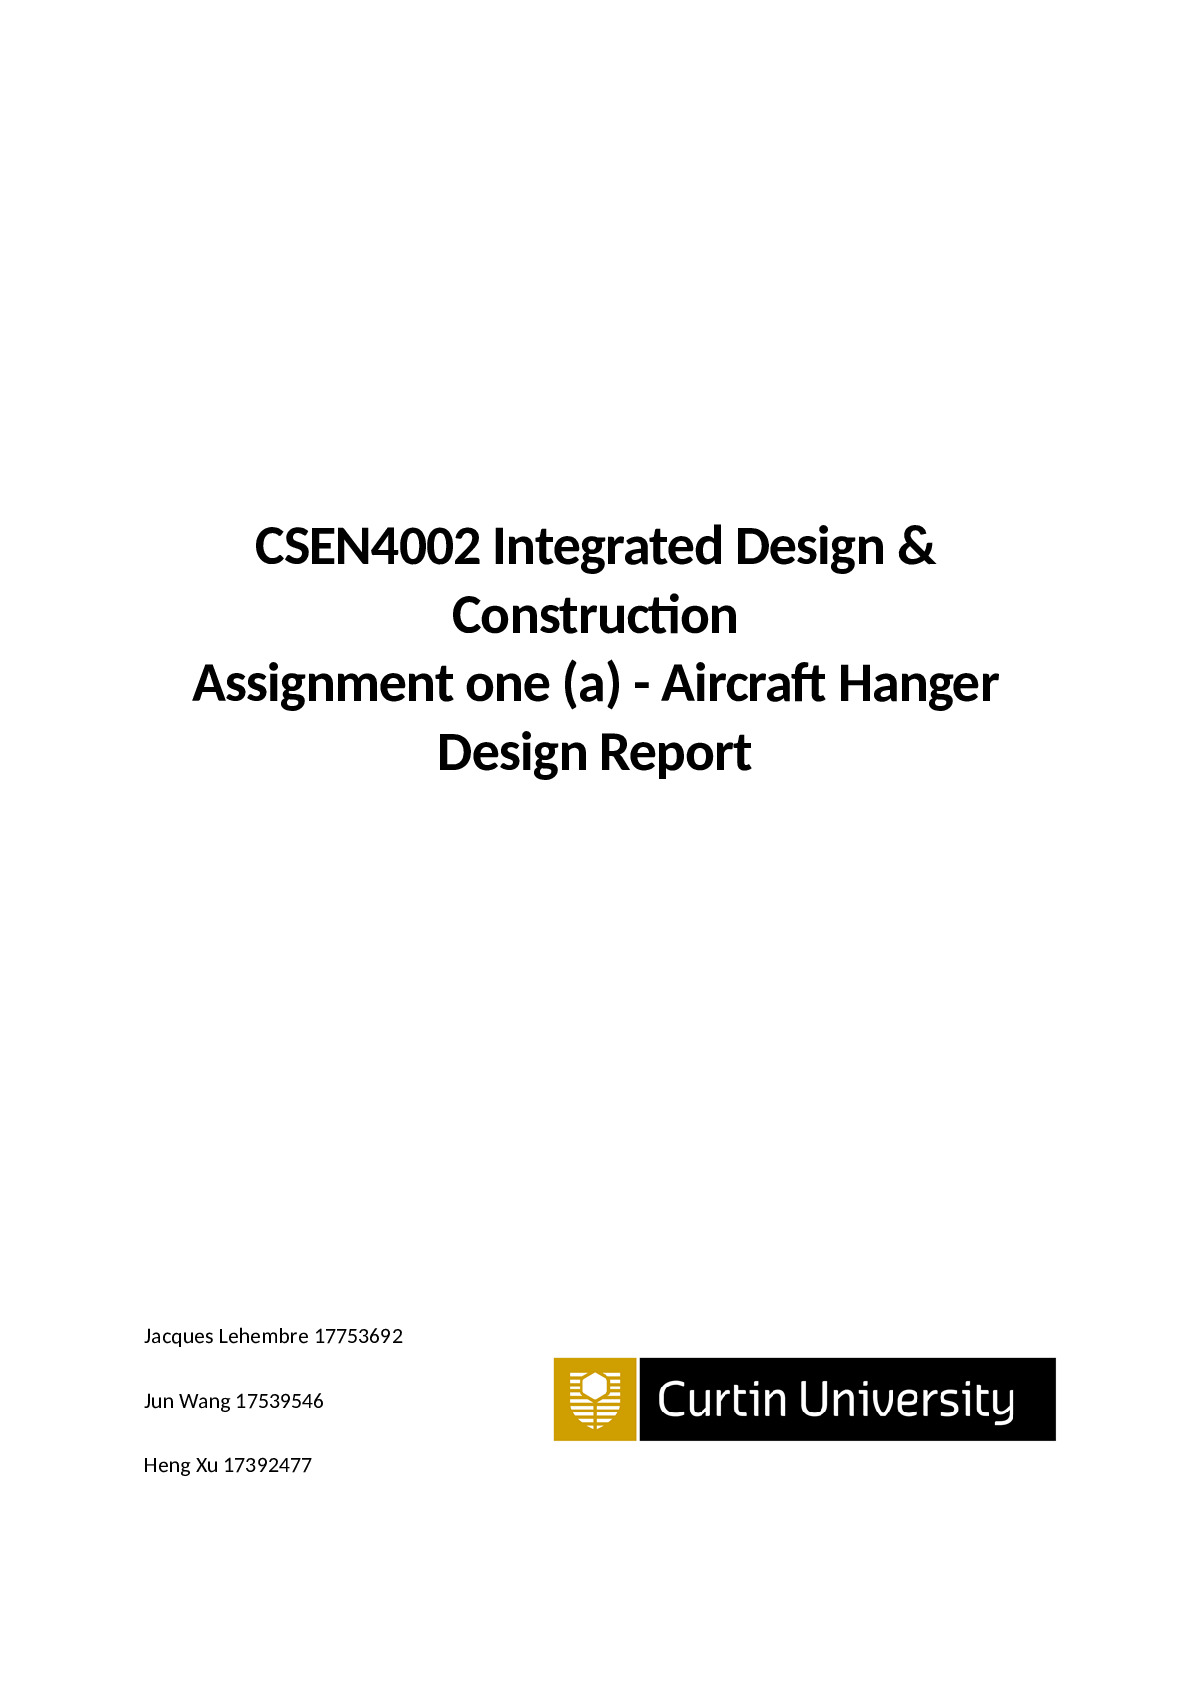 CSEN4002_Assignment_1a_Design_Report.docx